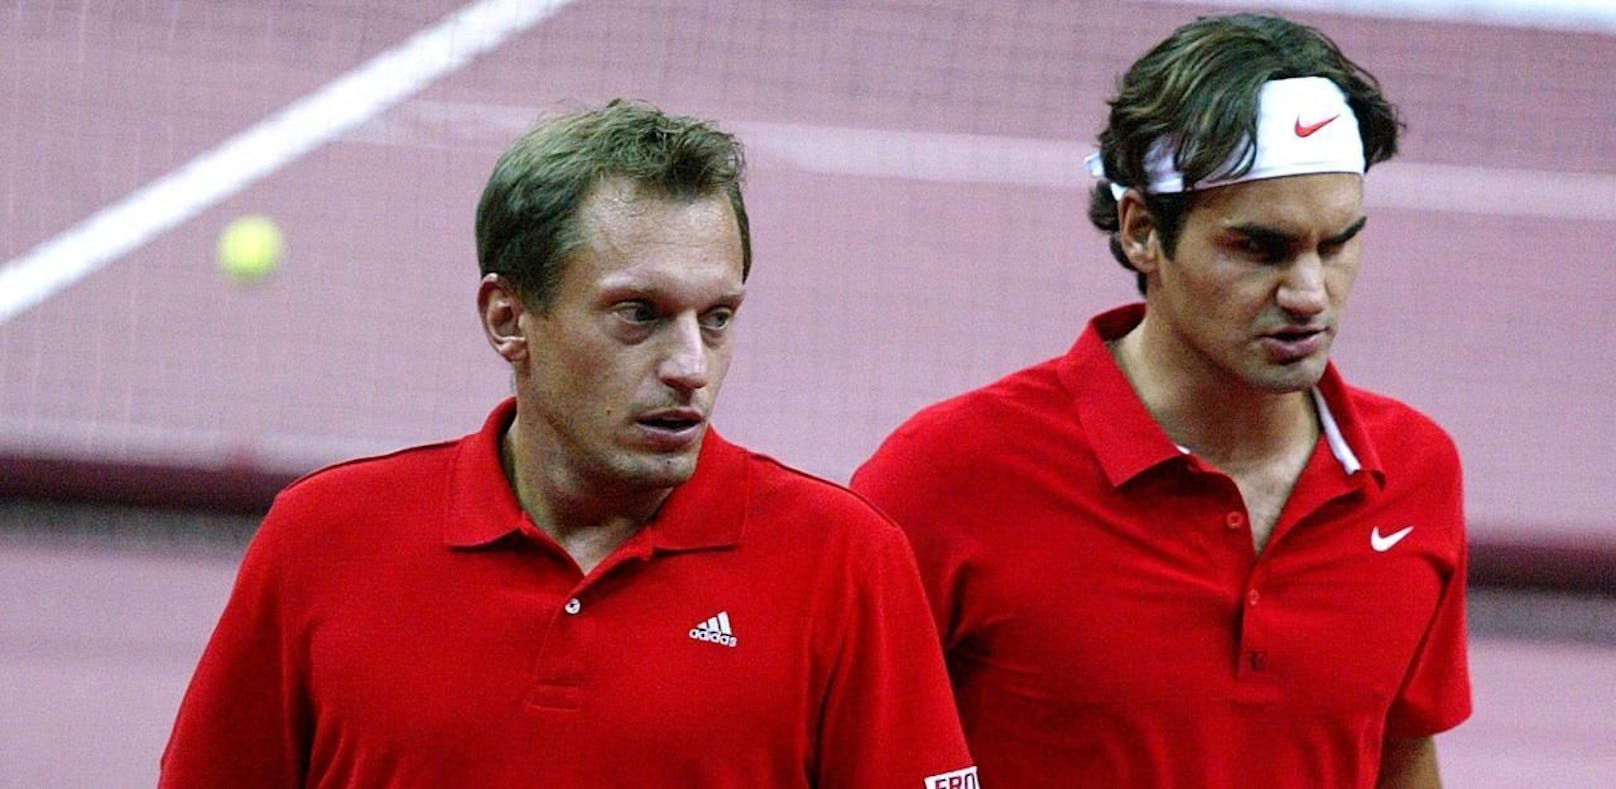 Yves Allegro (li.) mit Roger Federer (r.)